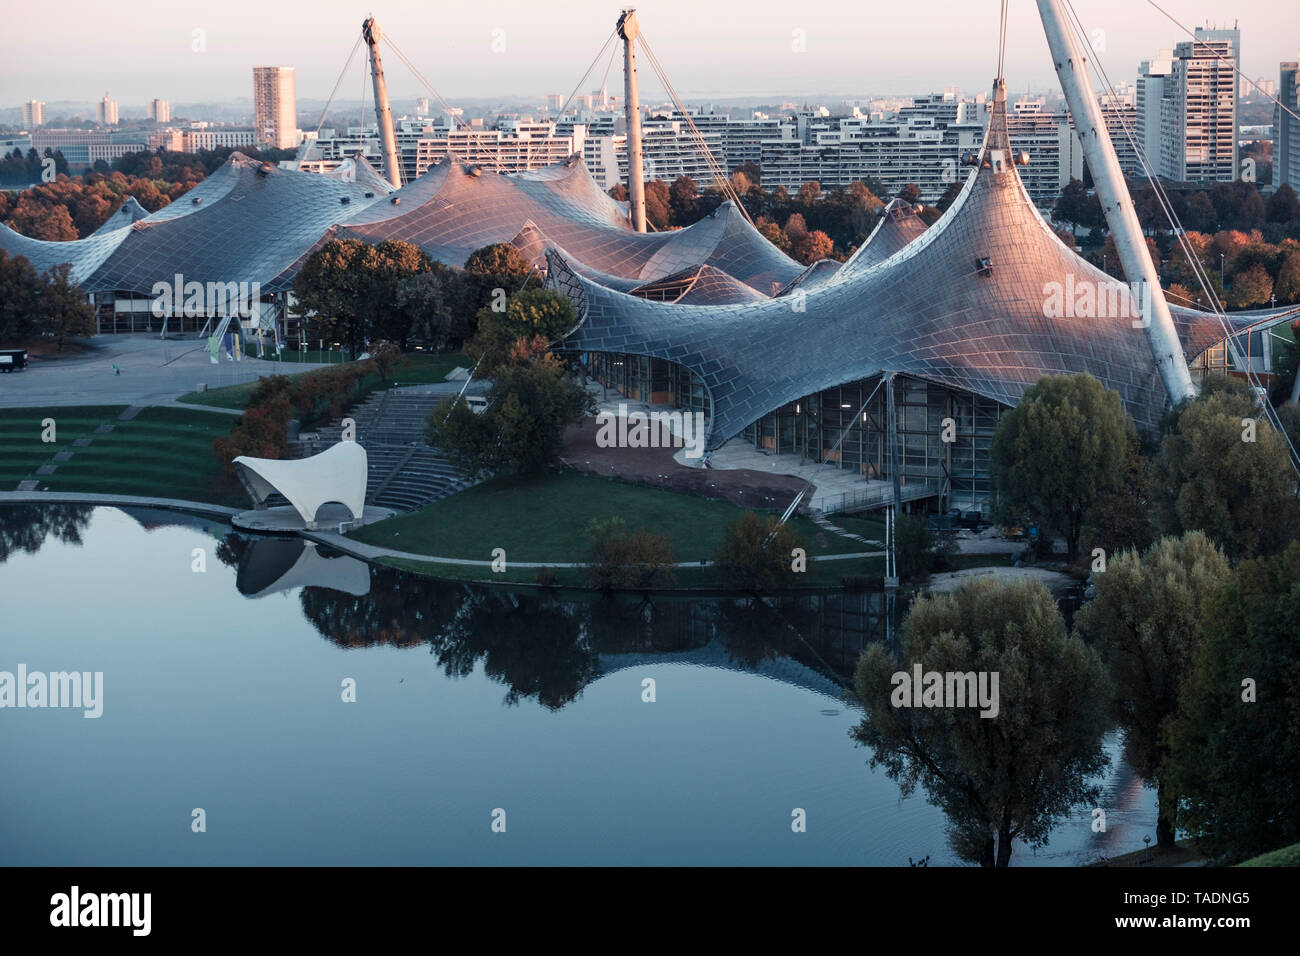 Germania - Monaco, Parco Olimpico stadio olimpico, tenda della costruzione del tetto nella luce del mattino Foto Stock